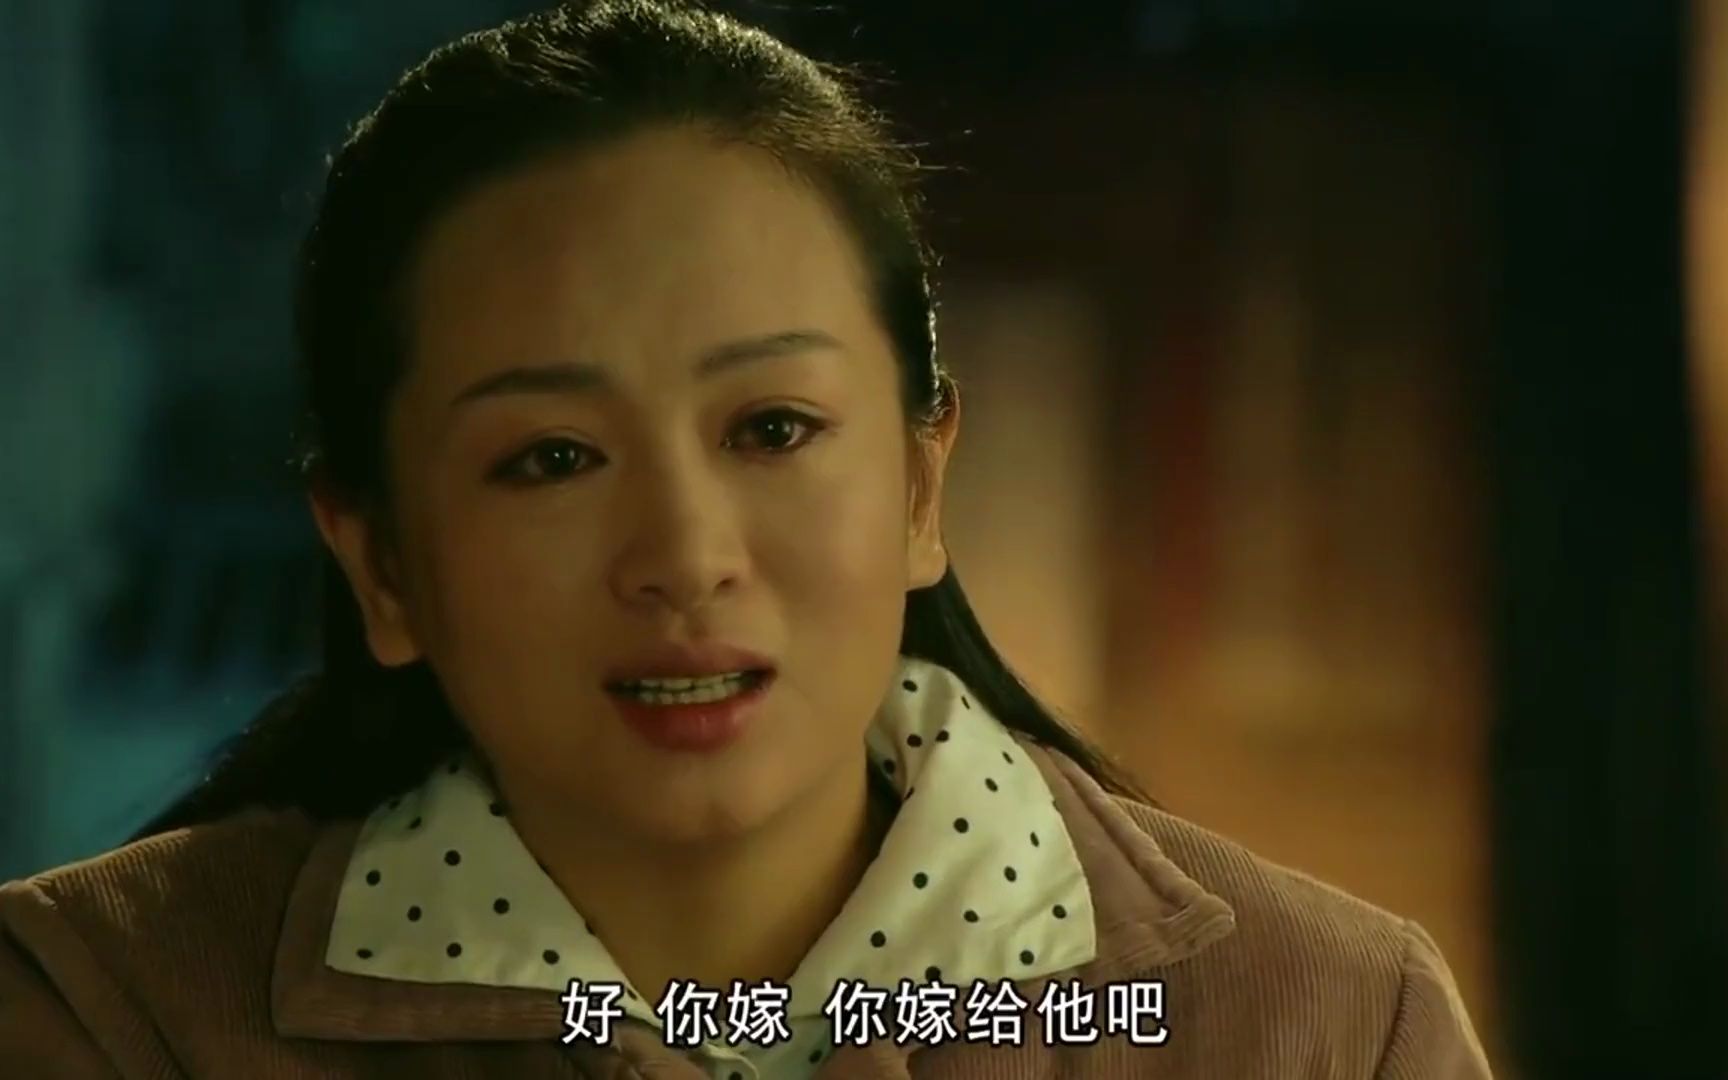 婚后三十年:苏蕾告诉苏红梅,自己要嫁给康文彬